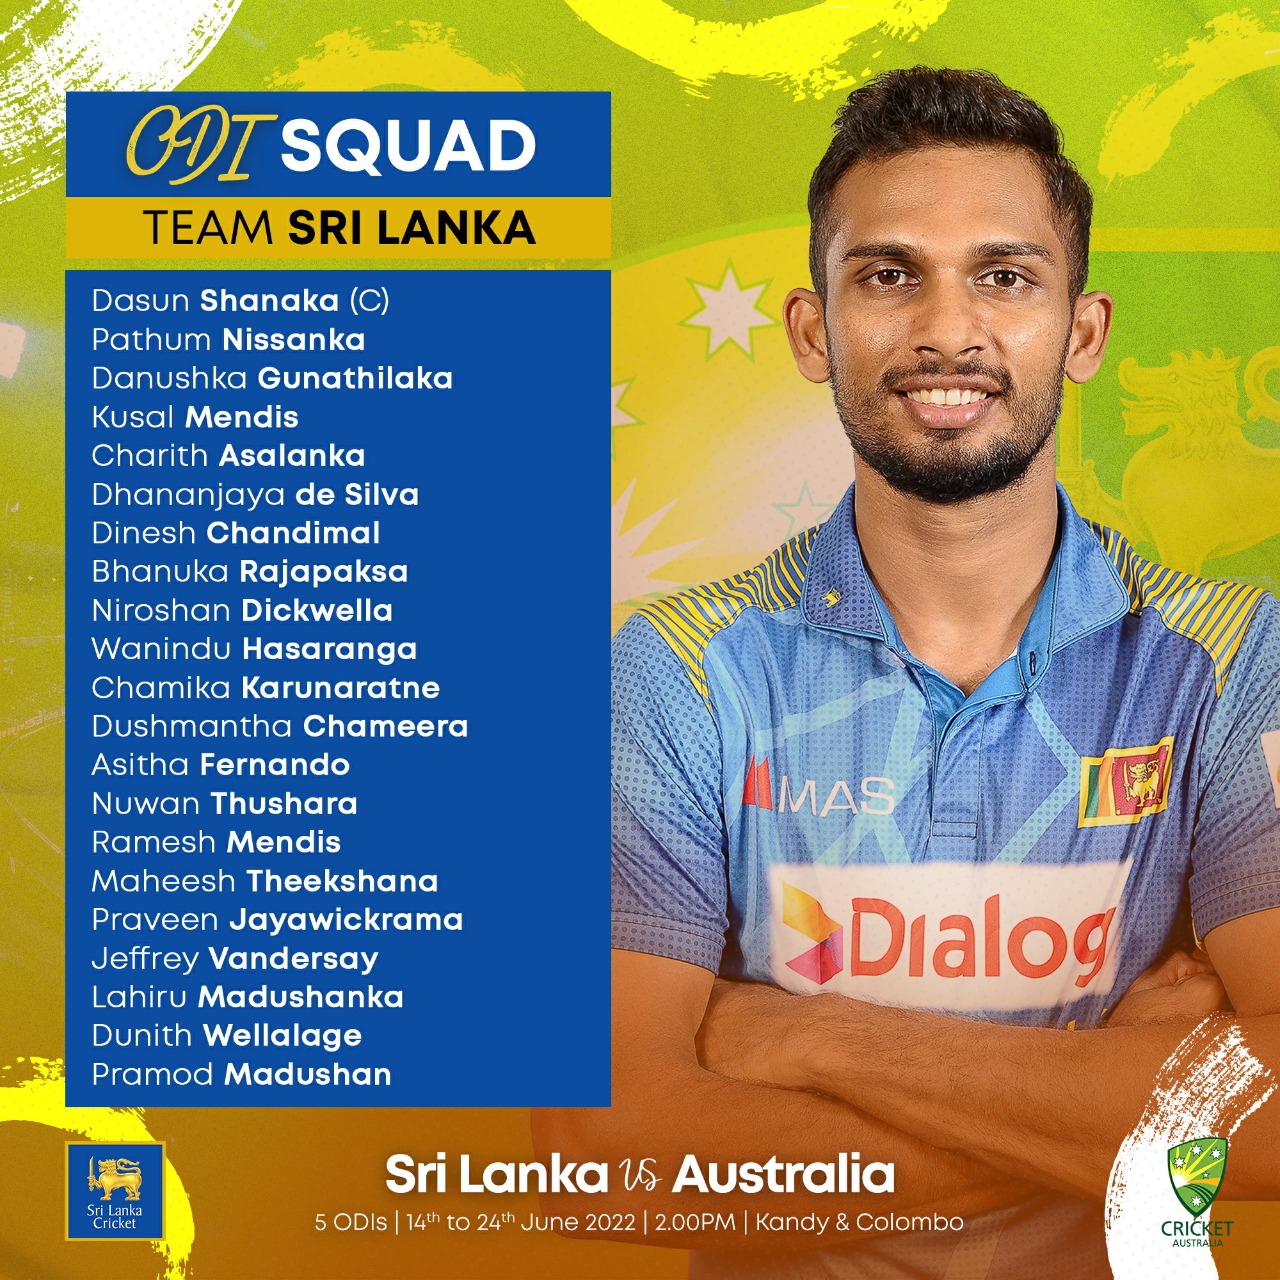 Sri Lanka ODI squad for Australia series